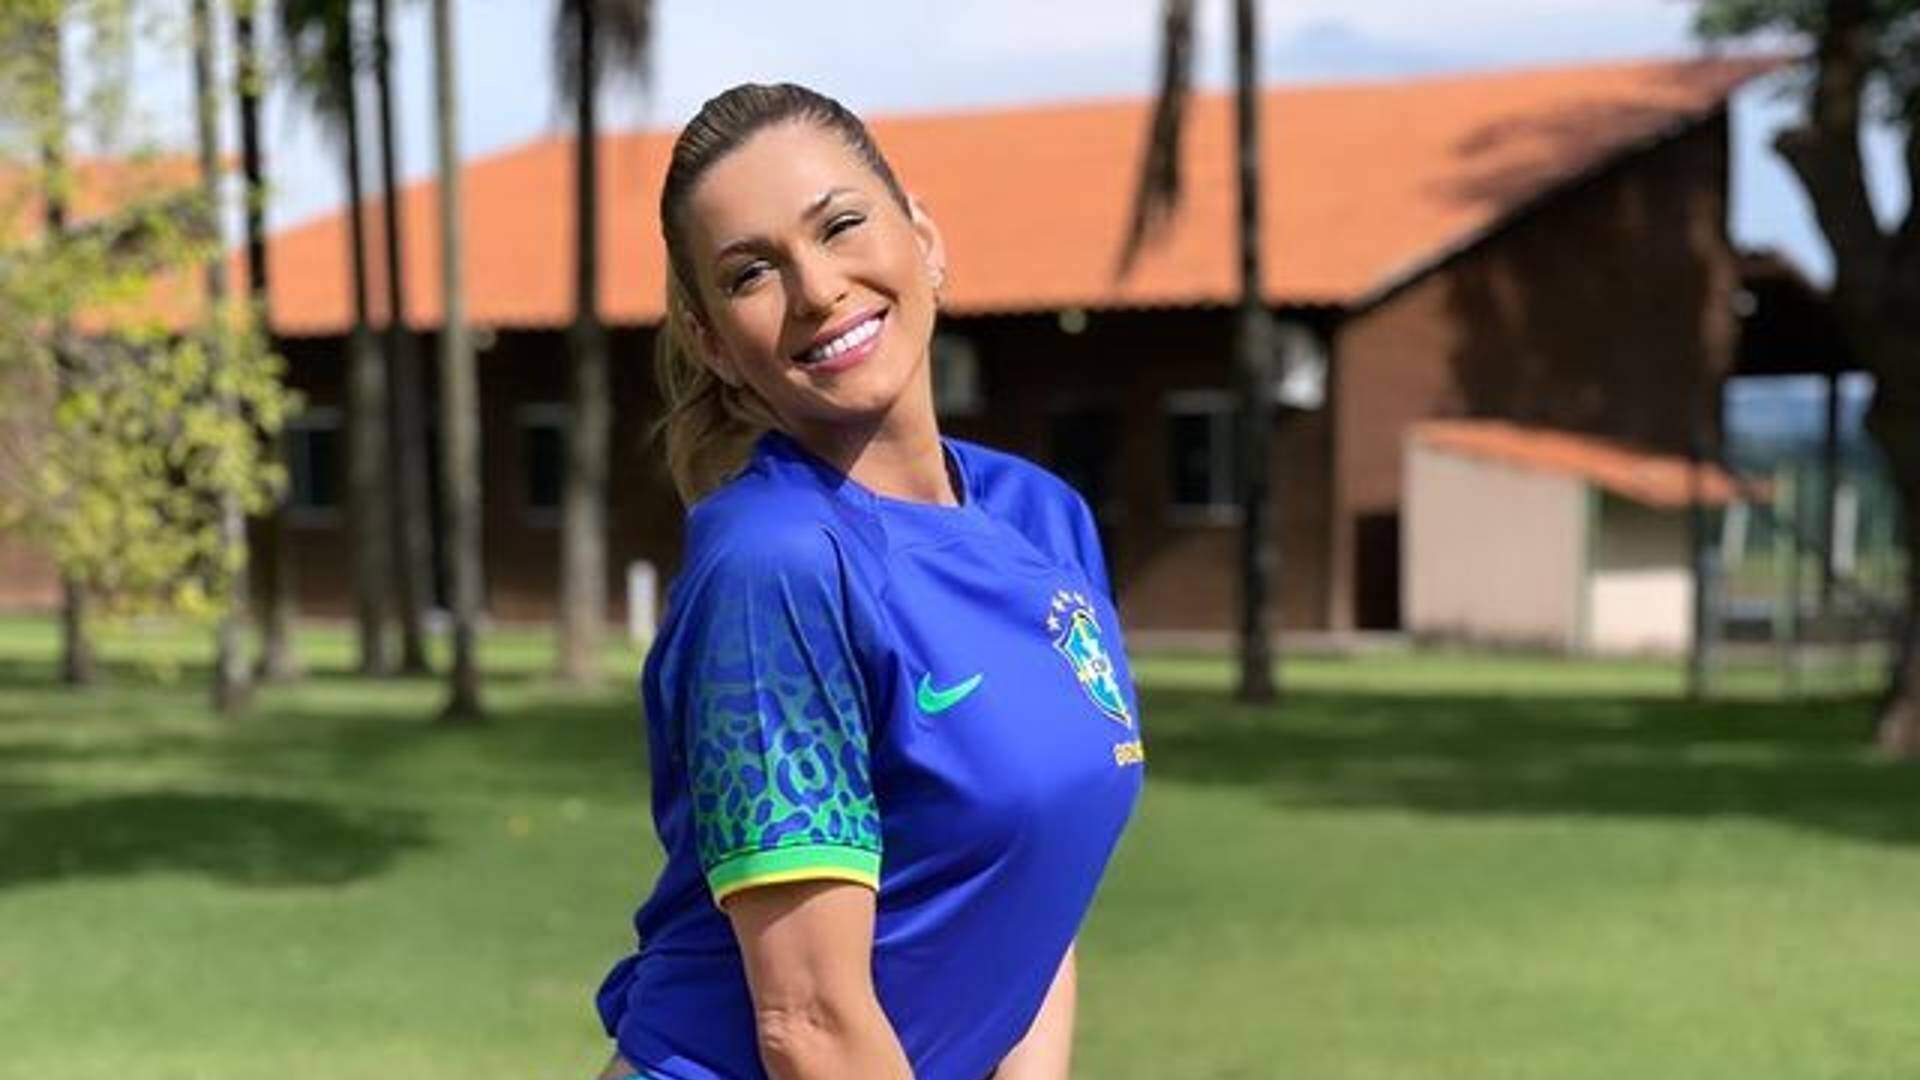 Bumbum de Lívia Andrade quase ‘rasga’ uniforme do Brasil com empinada: “Linda com esse rabetão” - Metropolitana FM